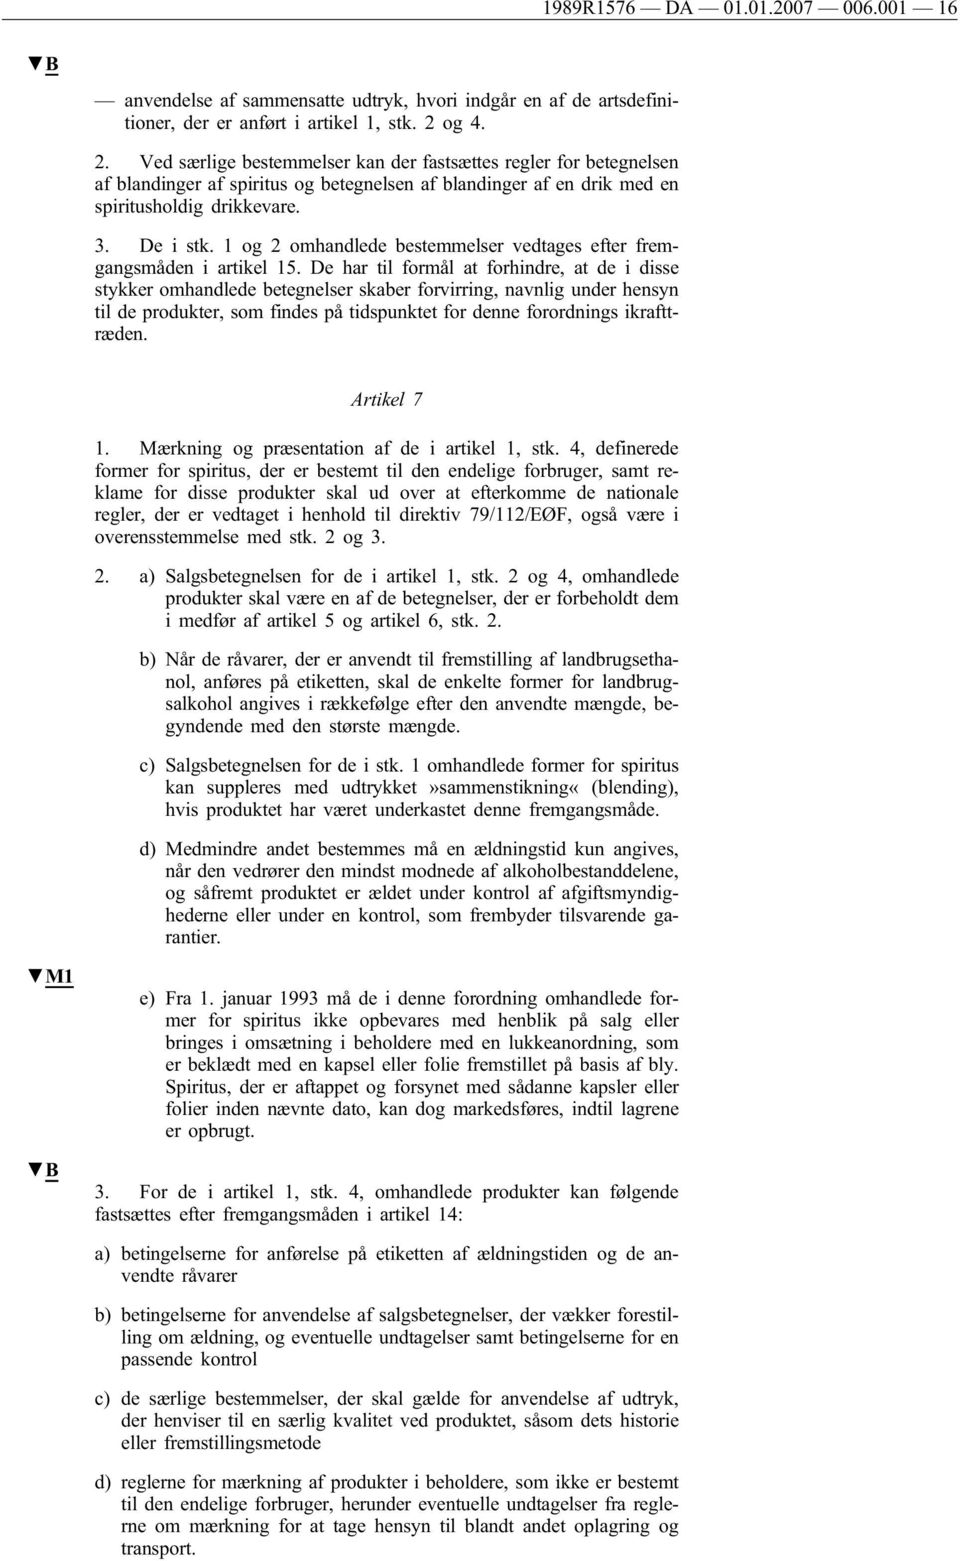 1 og 2 omhandlede bestemmelser vedtages efter fremgangsmåden i artikel 15.